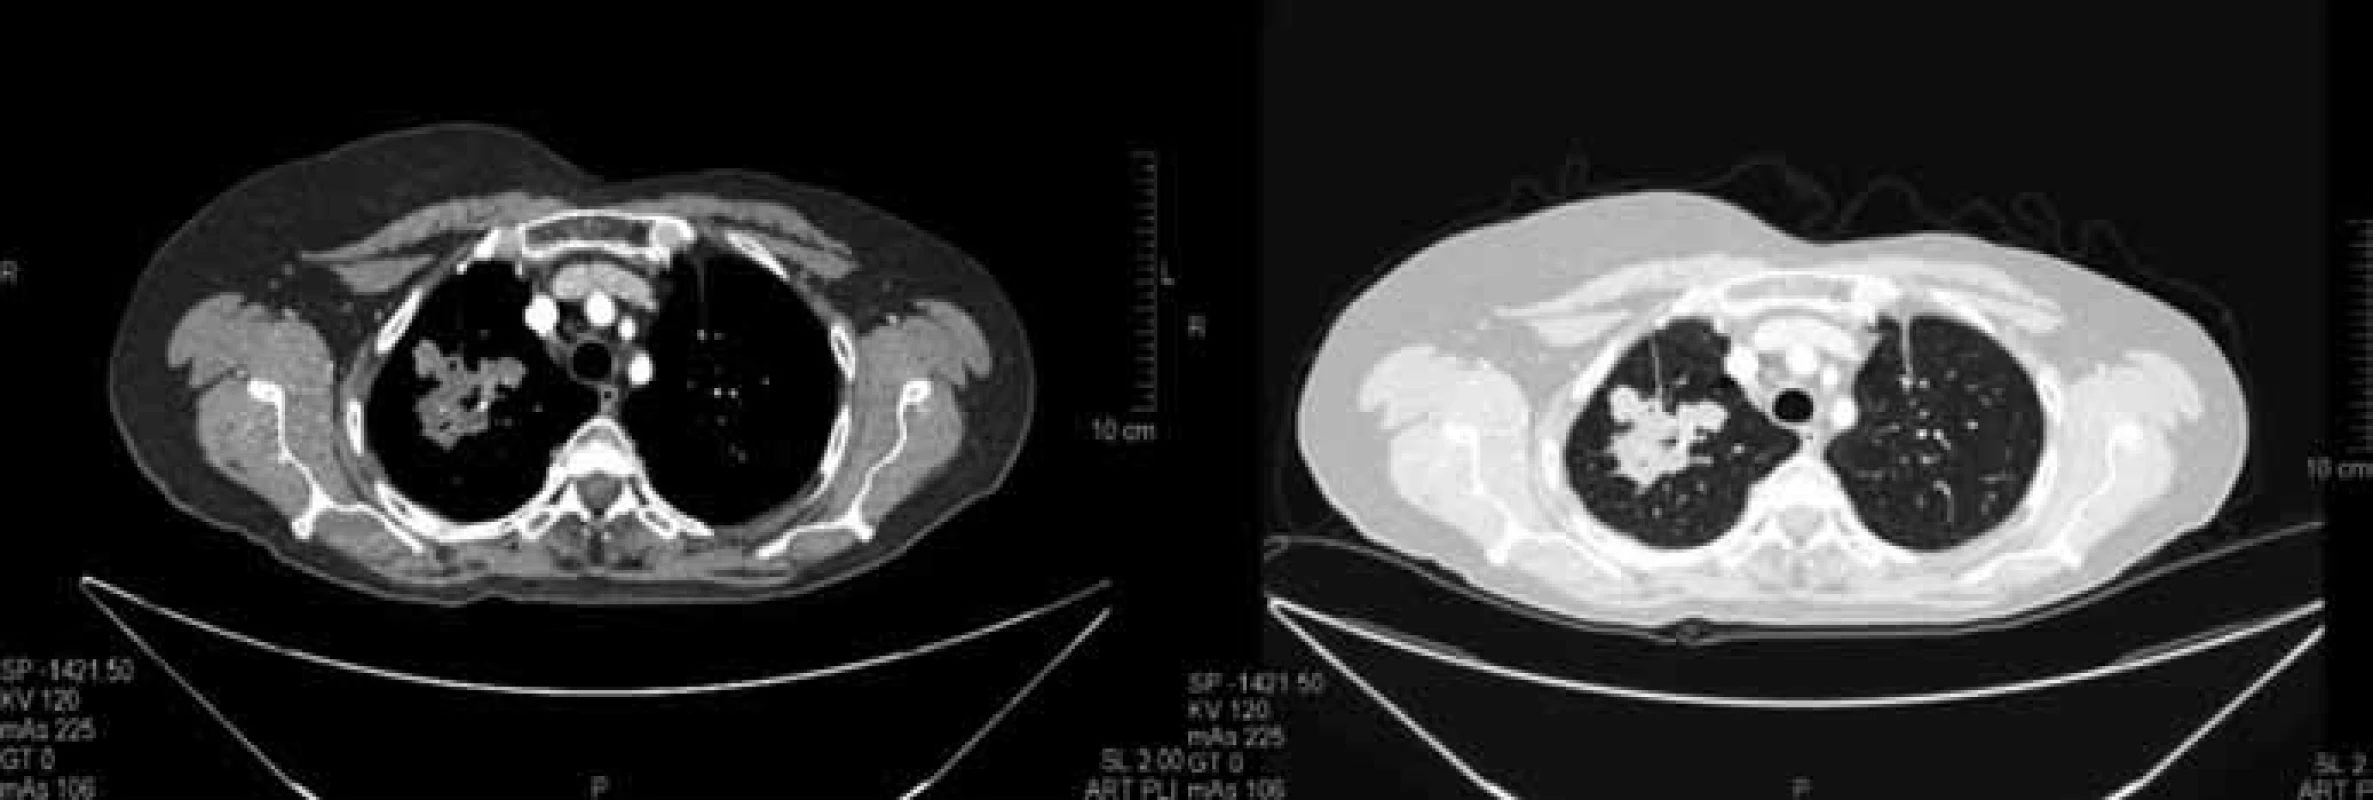 Vstupní CT vyšetření plic z prosince 2009 před zahájením terapie. Vstupně 2 cílové léze o součtu rozměrů dle RECIST 85 mm.